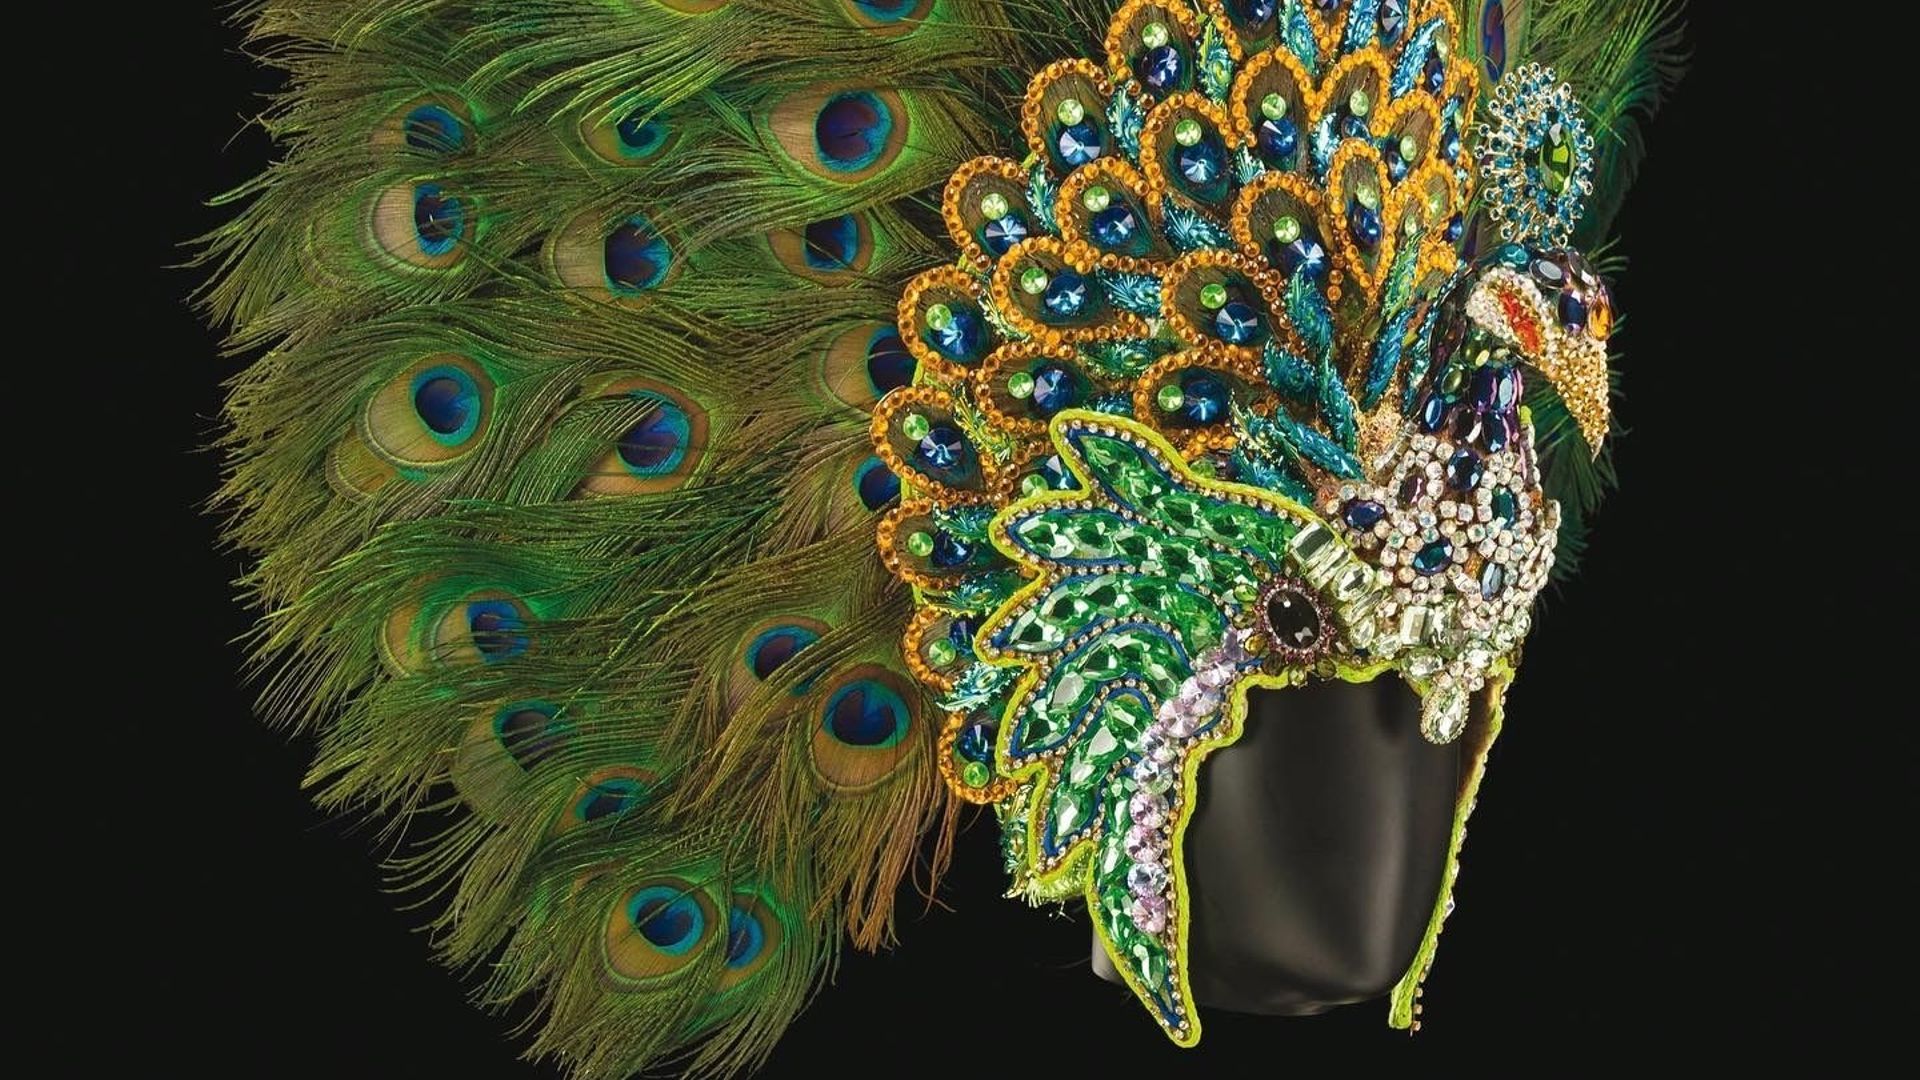 L’exposition “Le Fabuleux Carnaval de Rio”, du 2 juillet au 31 août au Château de Beloeil